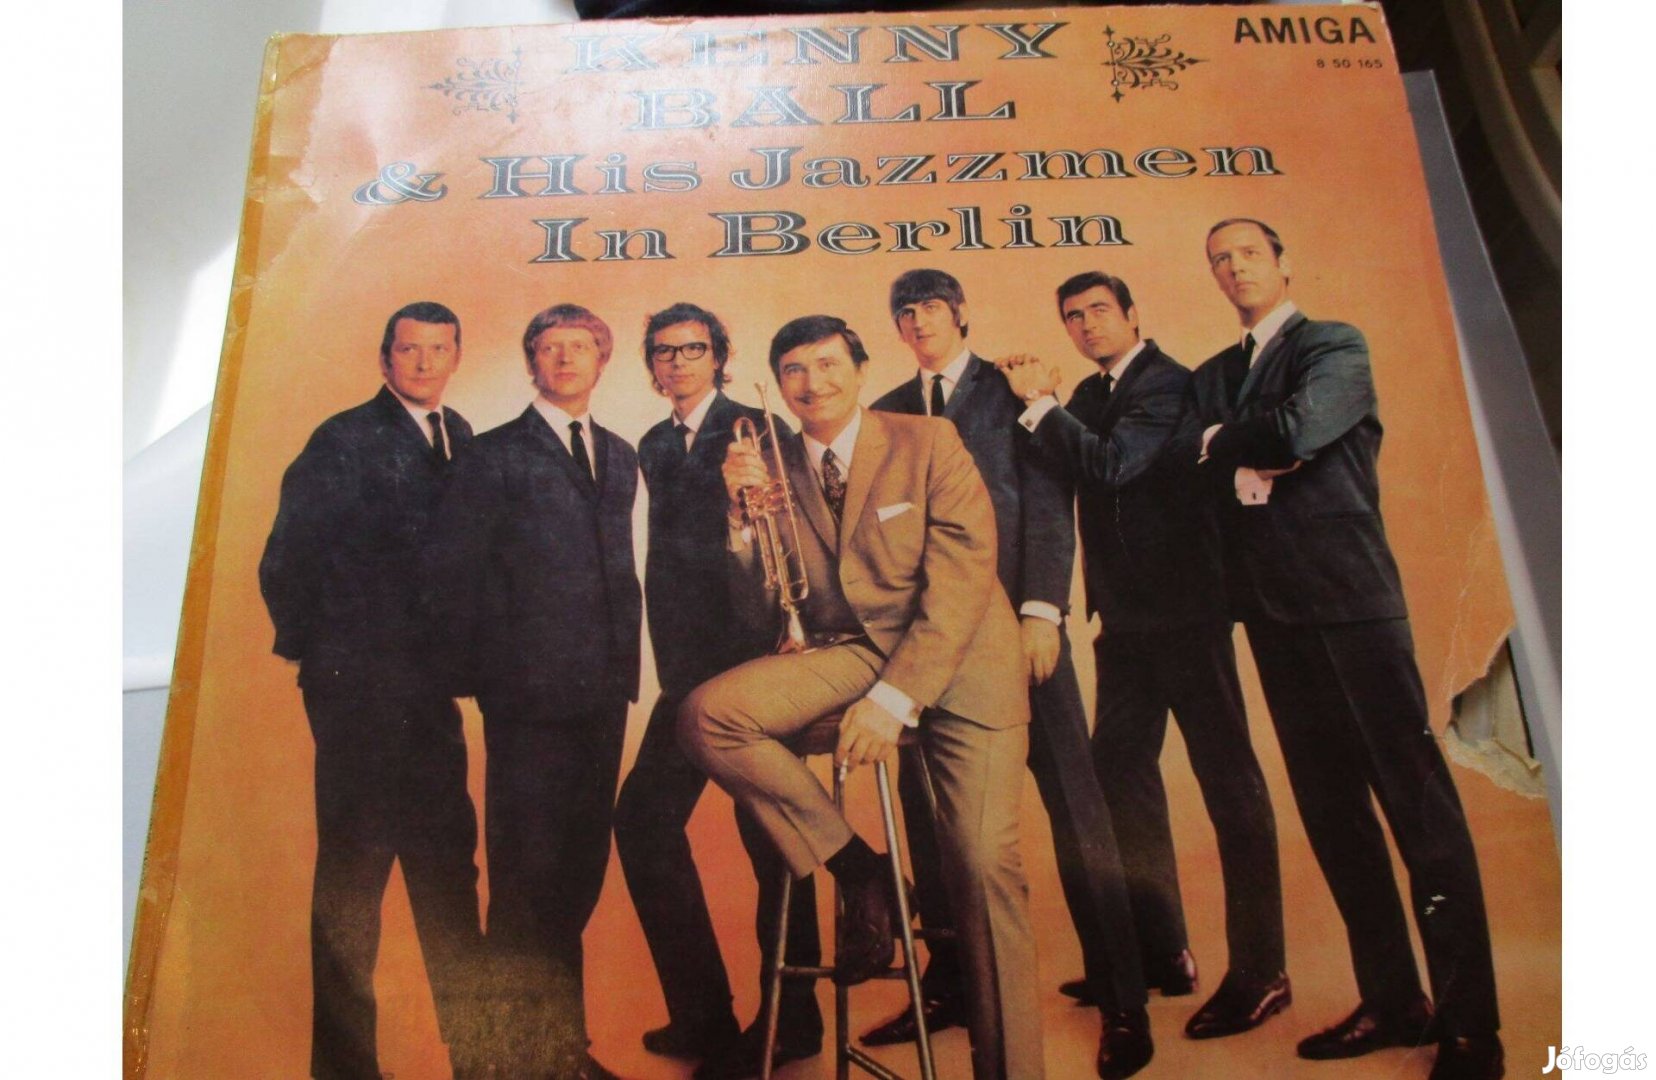 Kenny Ball & His jazzmen in Berlin bakelit hanglemez eladó